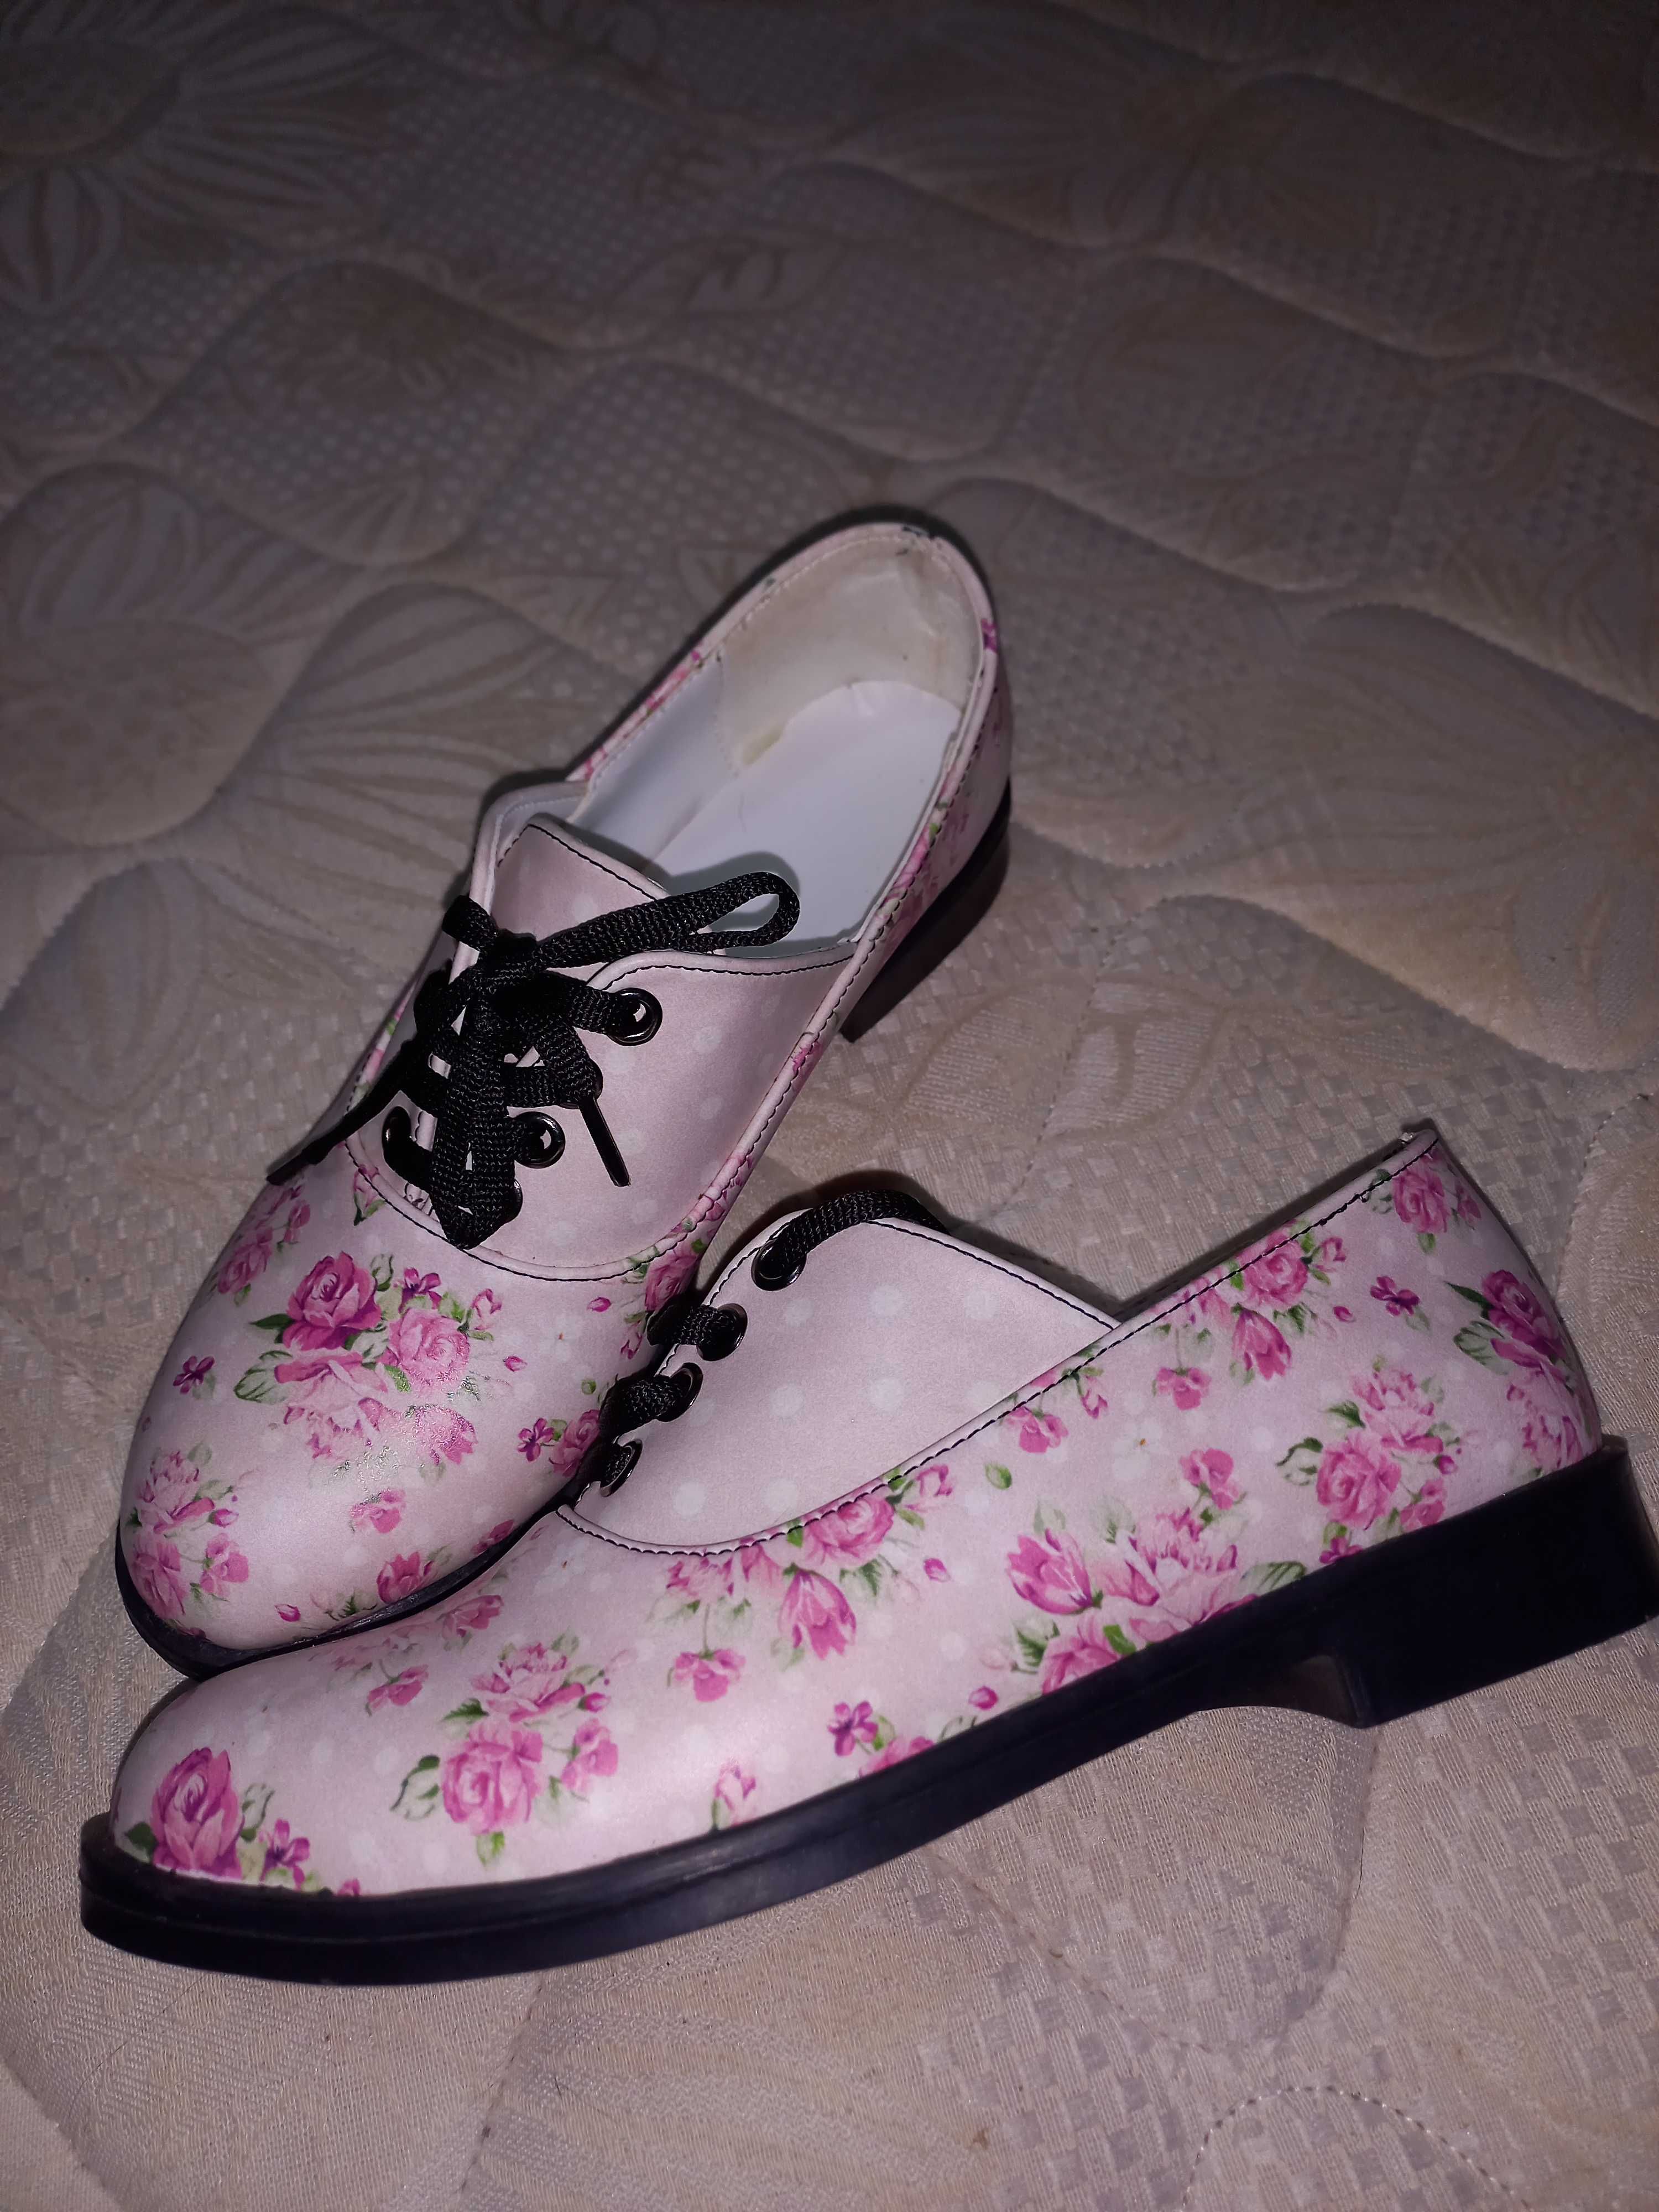 Sapatos novos rasos cor-de-rosa com flores.